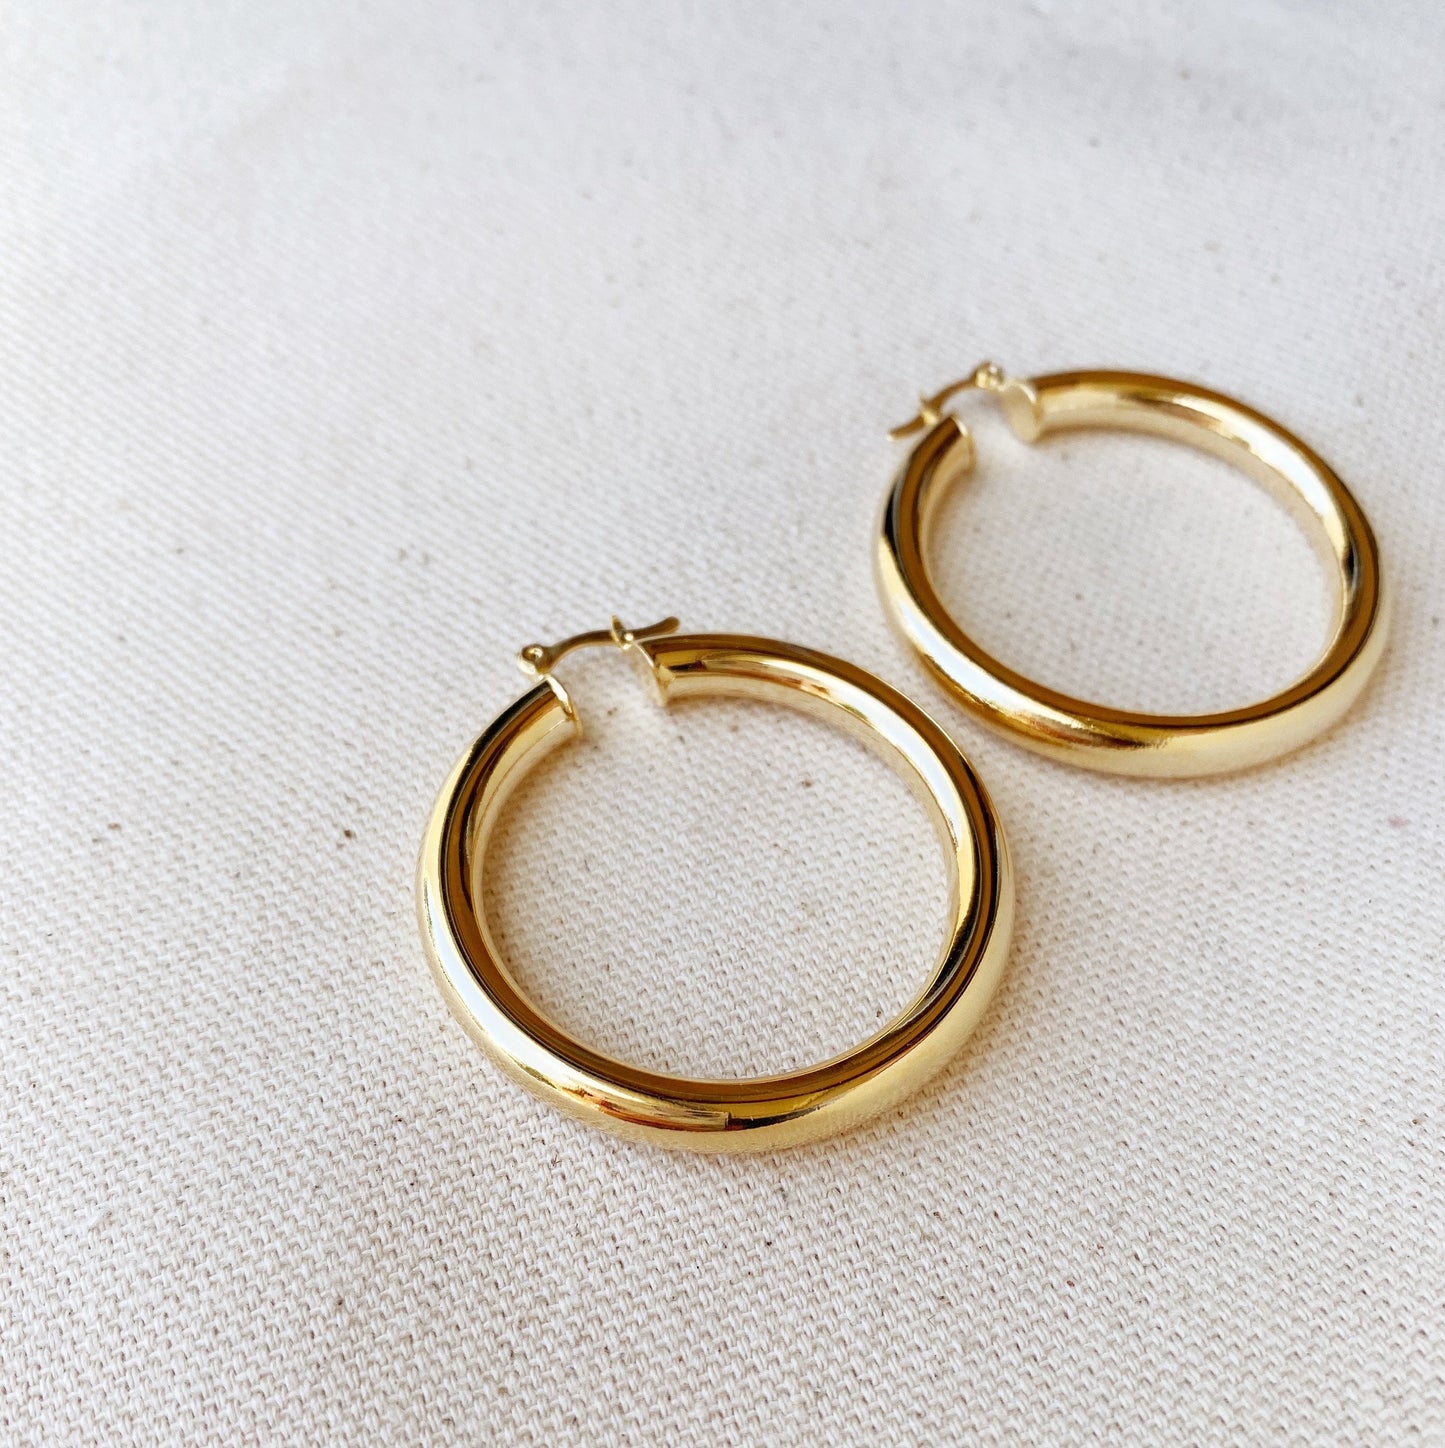 GoldFi 18k Gold Filled Selena Inspired Hoop Earrings 44 mm Diameter